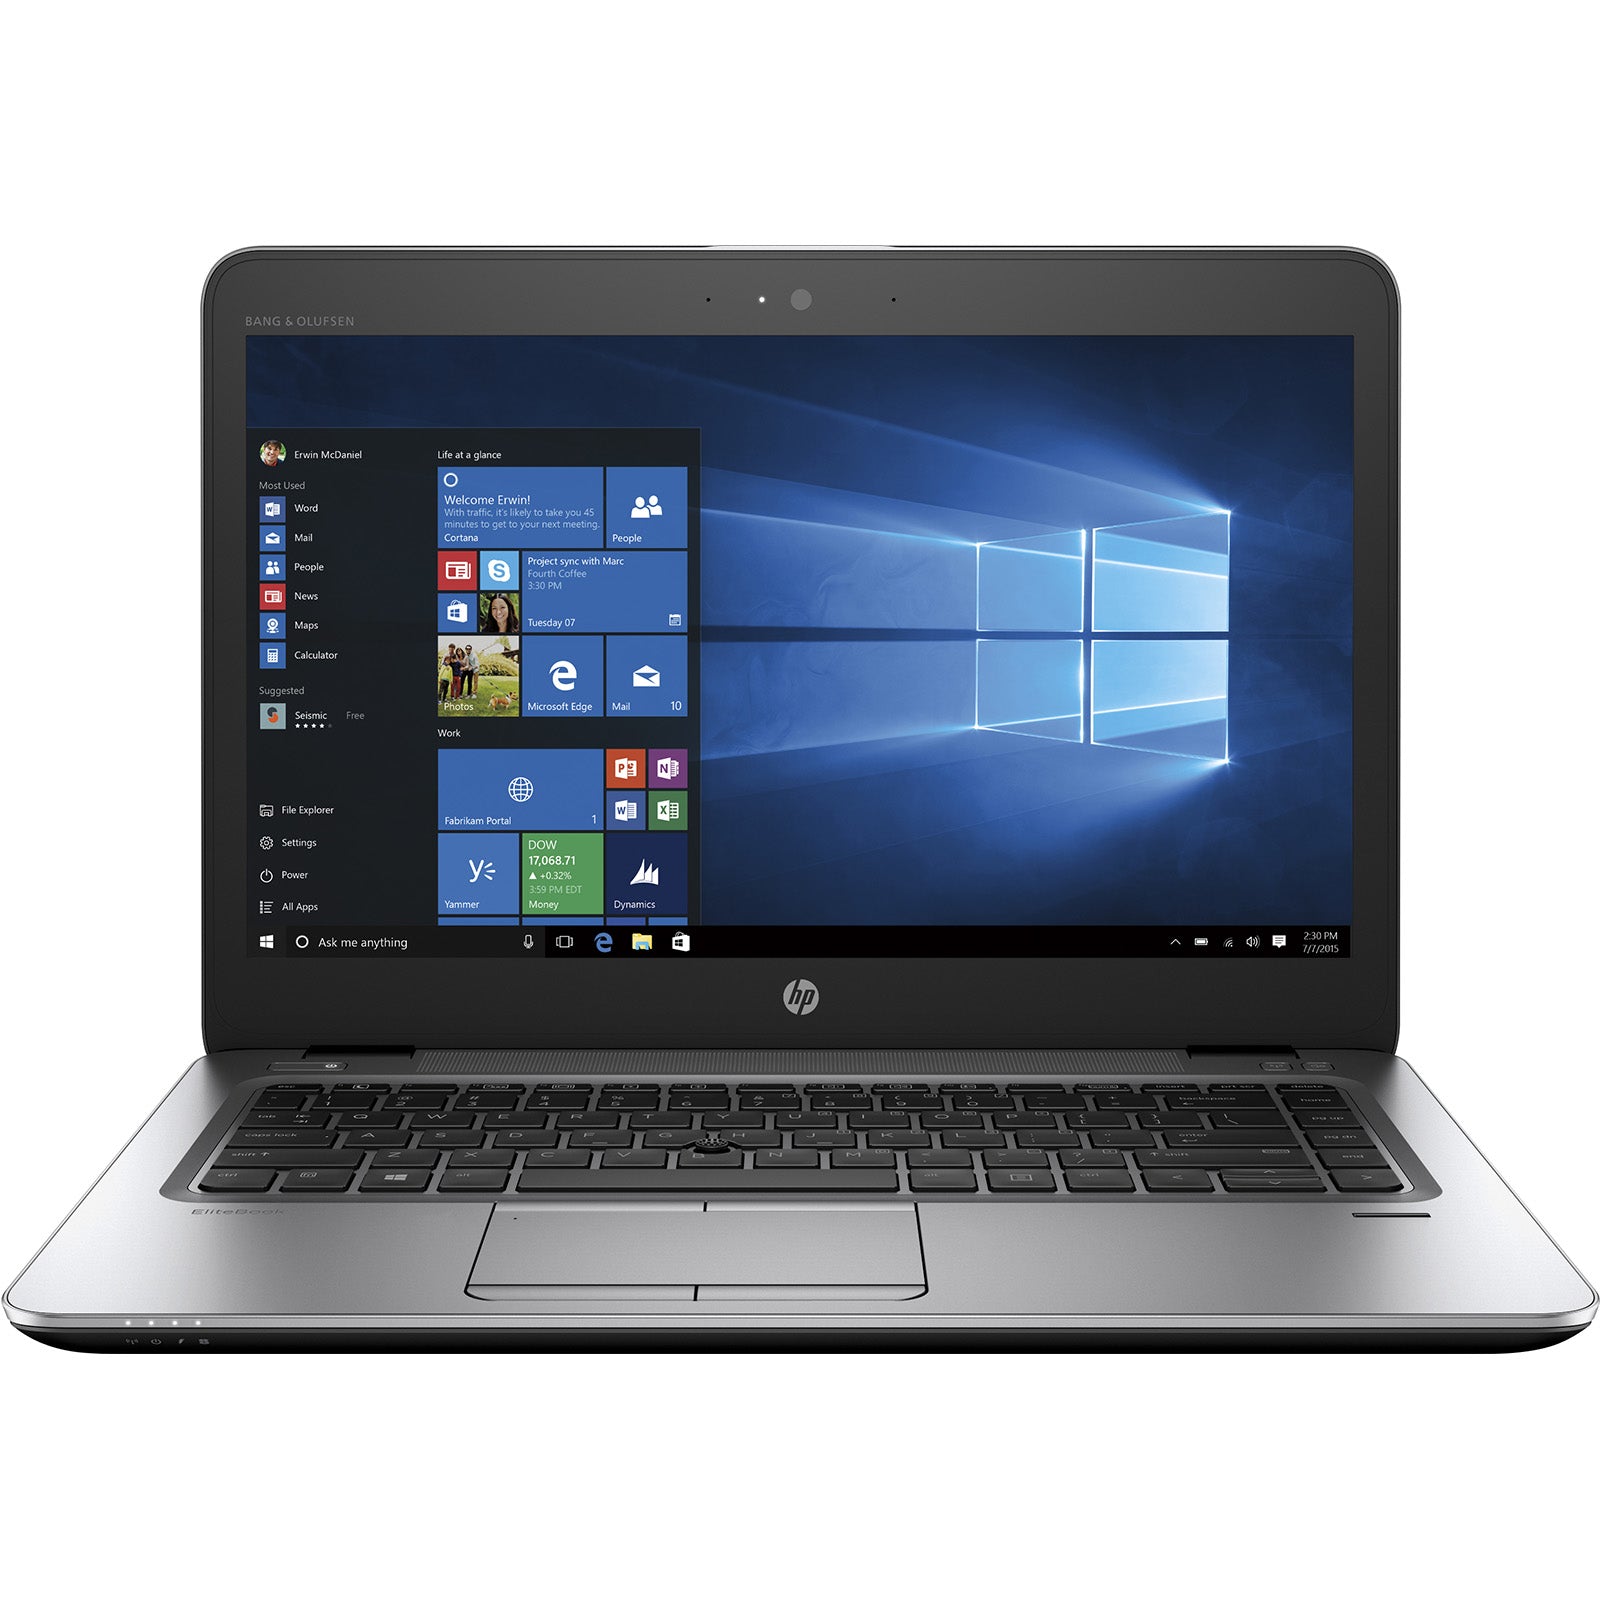 Notebook ricondizionato - Grado A - Notebook PC Portatile Ricondizionato HP EliteBook 840 G4 14" Core i5-7200U Ram 8GB SSD 240GB Webcam Freedos - Disponibile in 2-4 giorni lavorativi